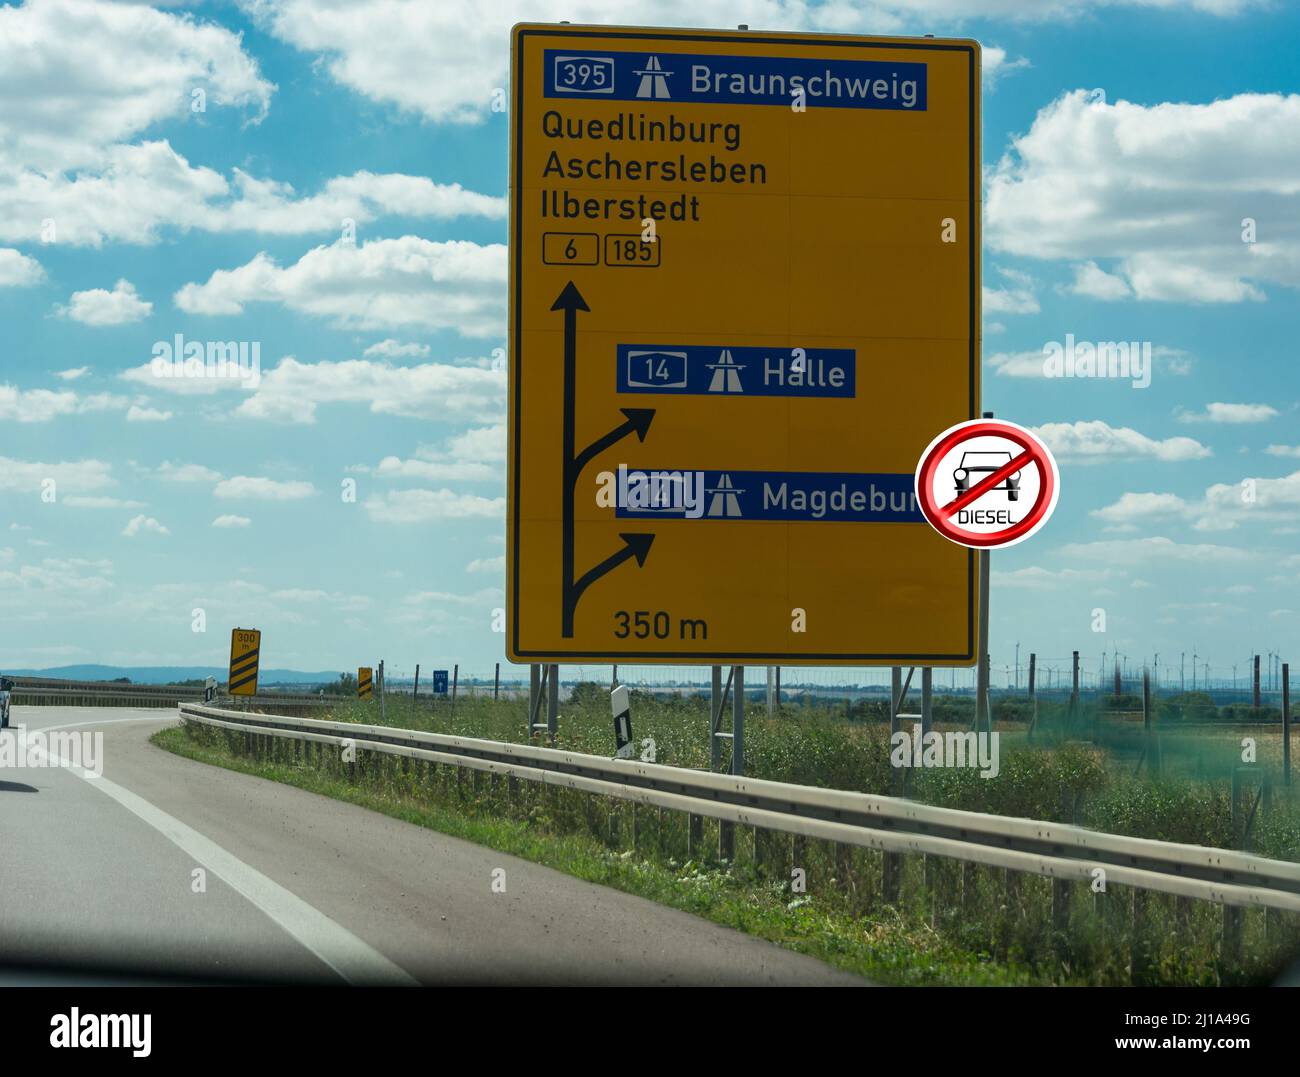 Panneaux routiers sur l'autoroute allemande montrant la route vers  Magdeburg, Halle, Quidlingburg et Braunschweig Photo Stock - Alamy